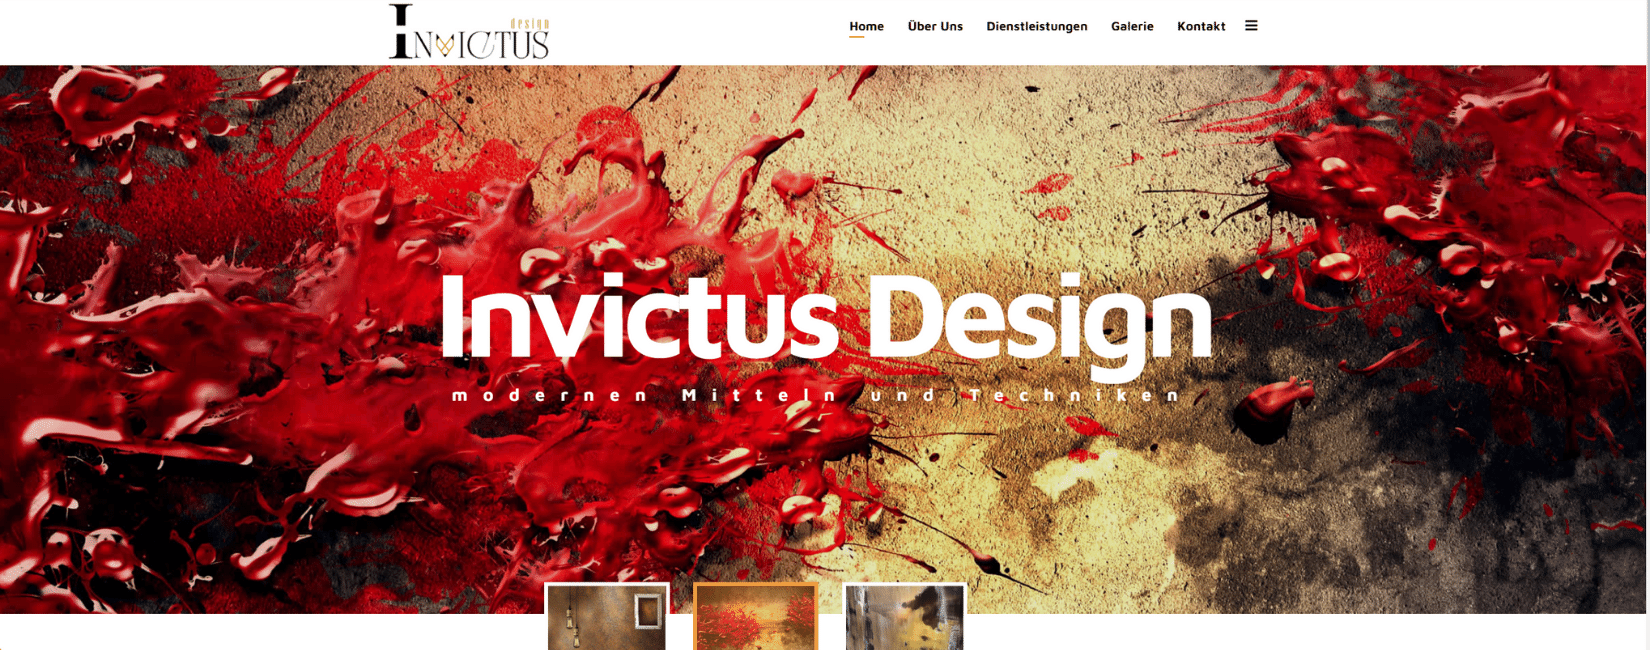 invictus design